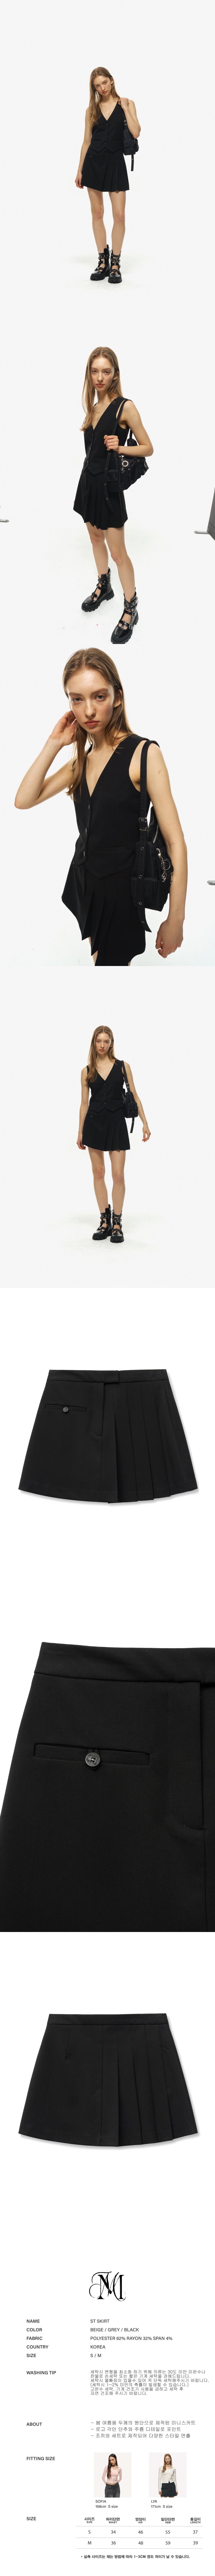 st skirt (black)